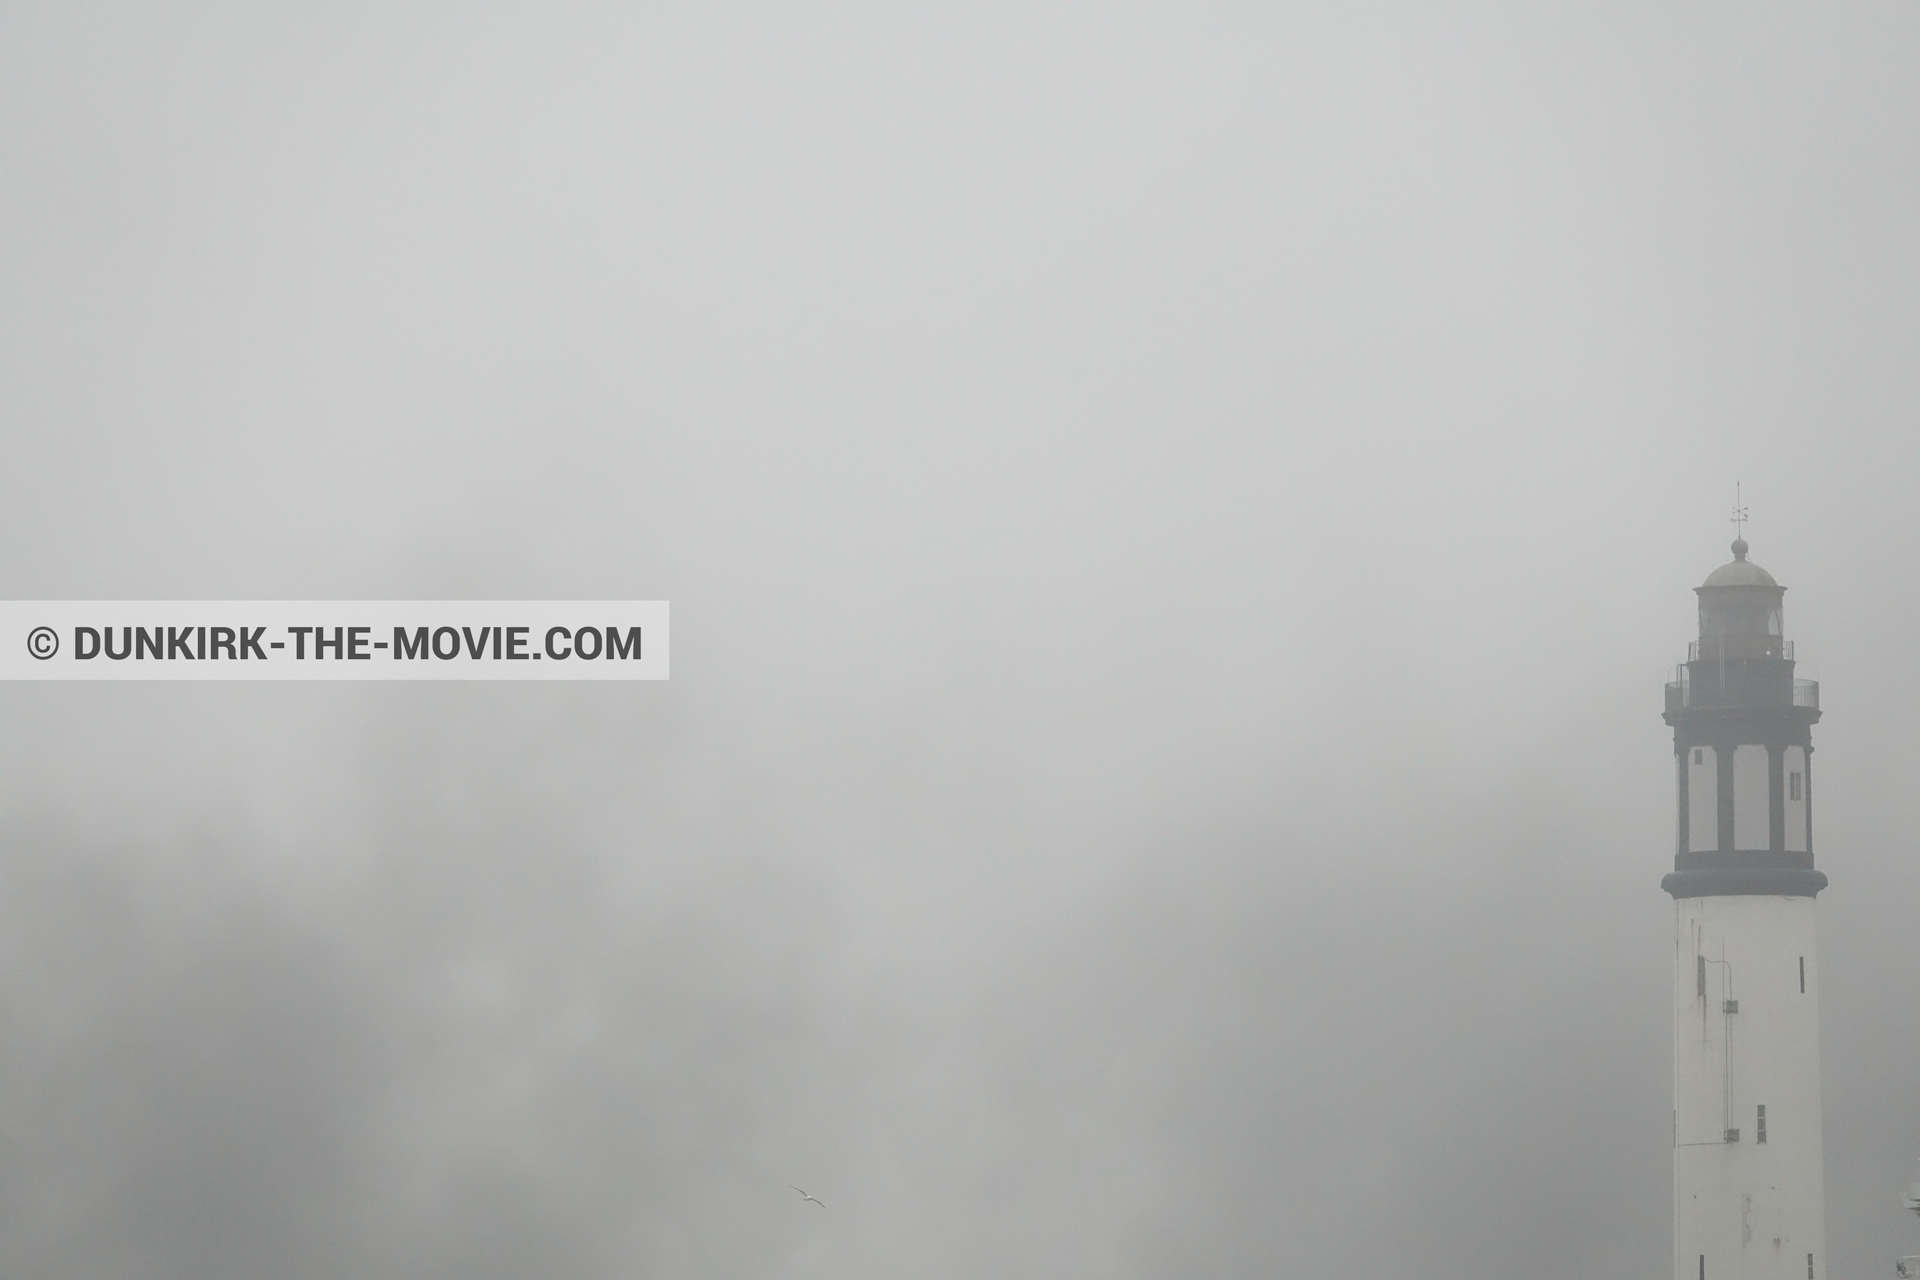 Fotos con cielo gris, humo negro, faro de Dunkerque,  durante el rodaje de la película Dunkerque de Nolan